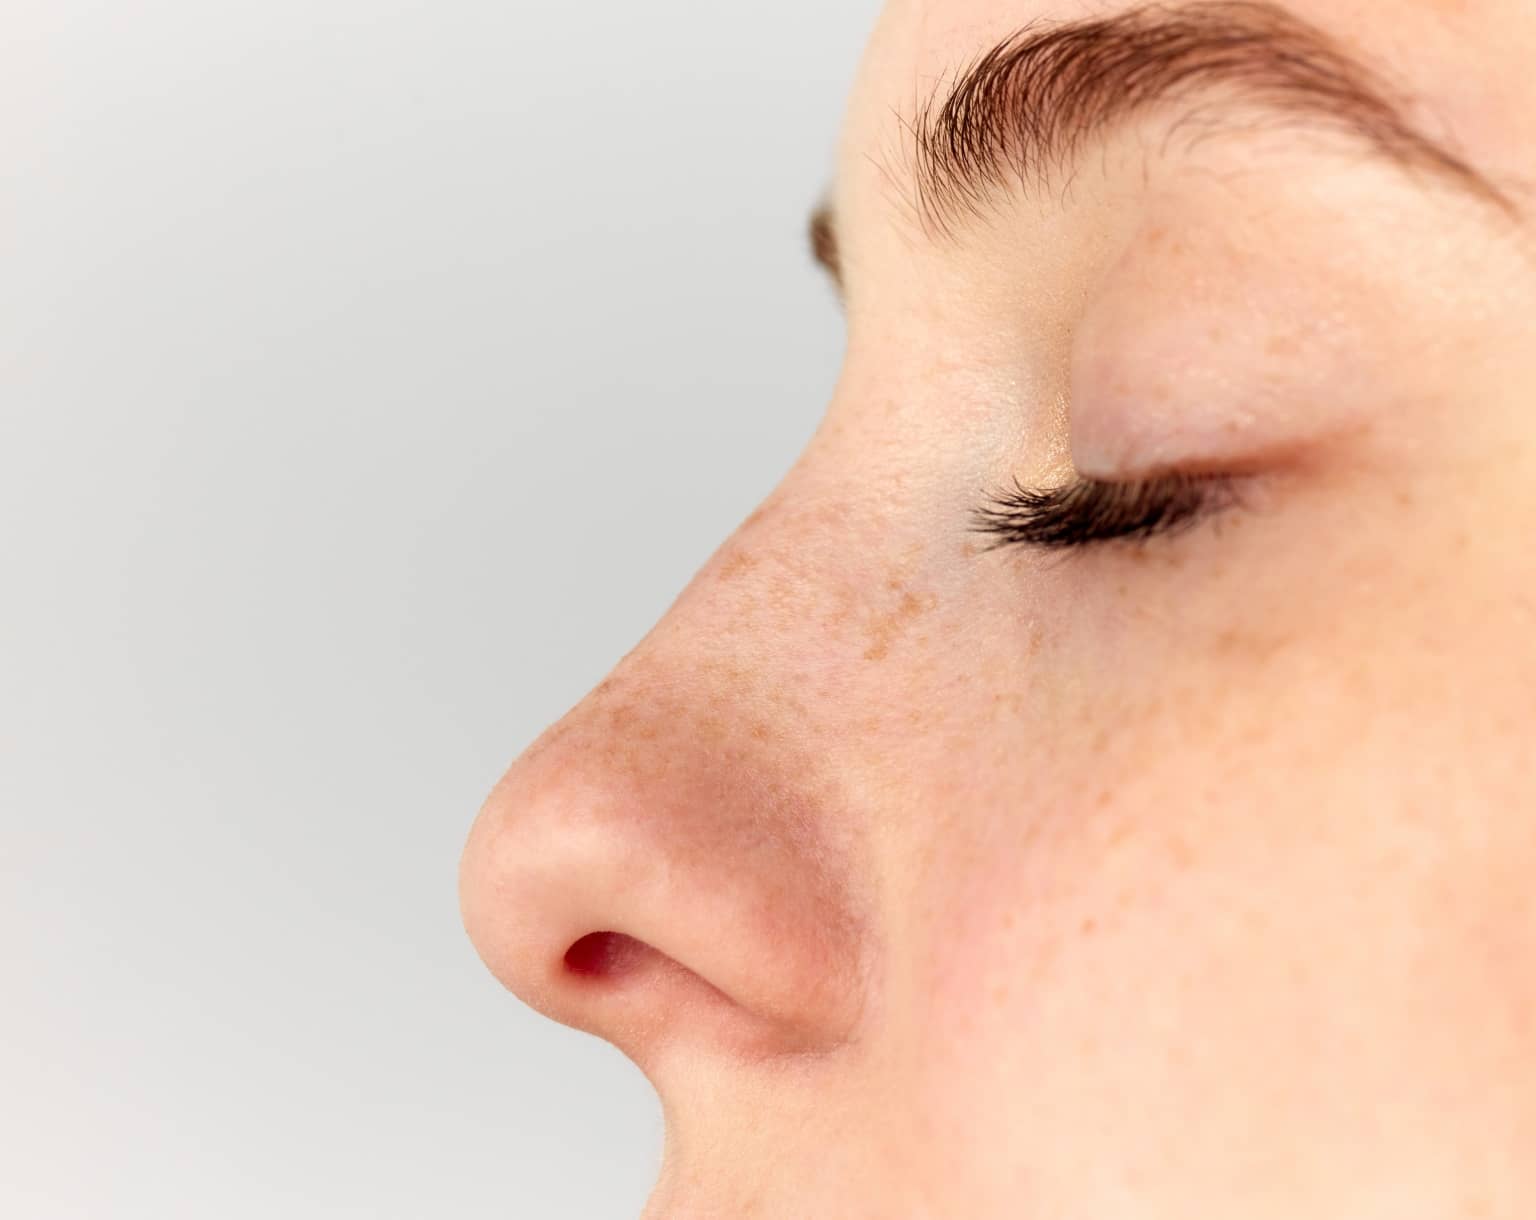 Comment vieillit un nez refait ? | Dr Durbec | Lyon